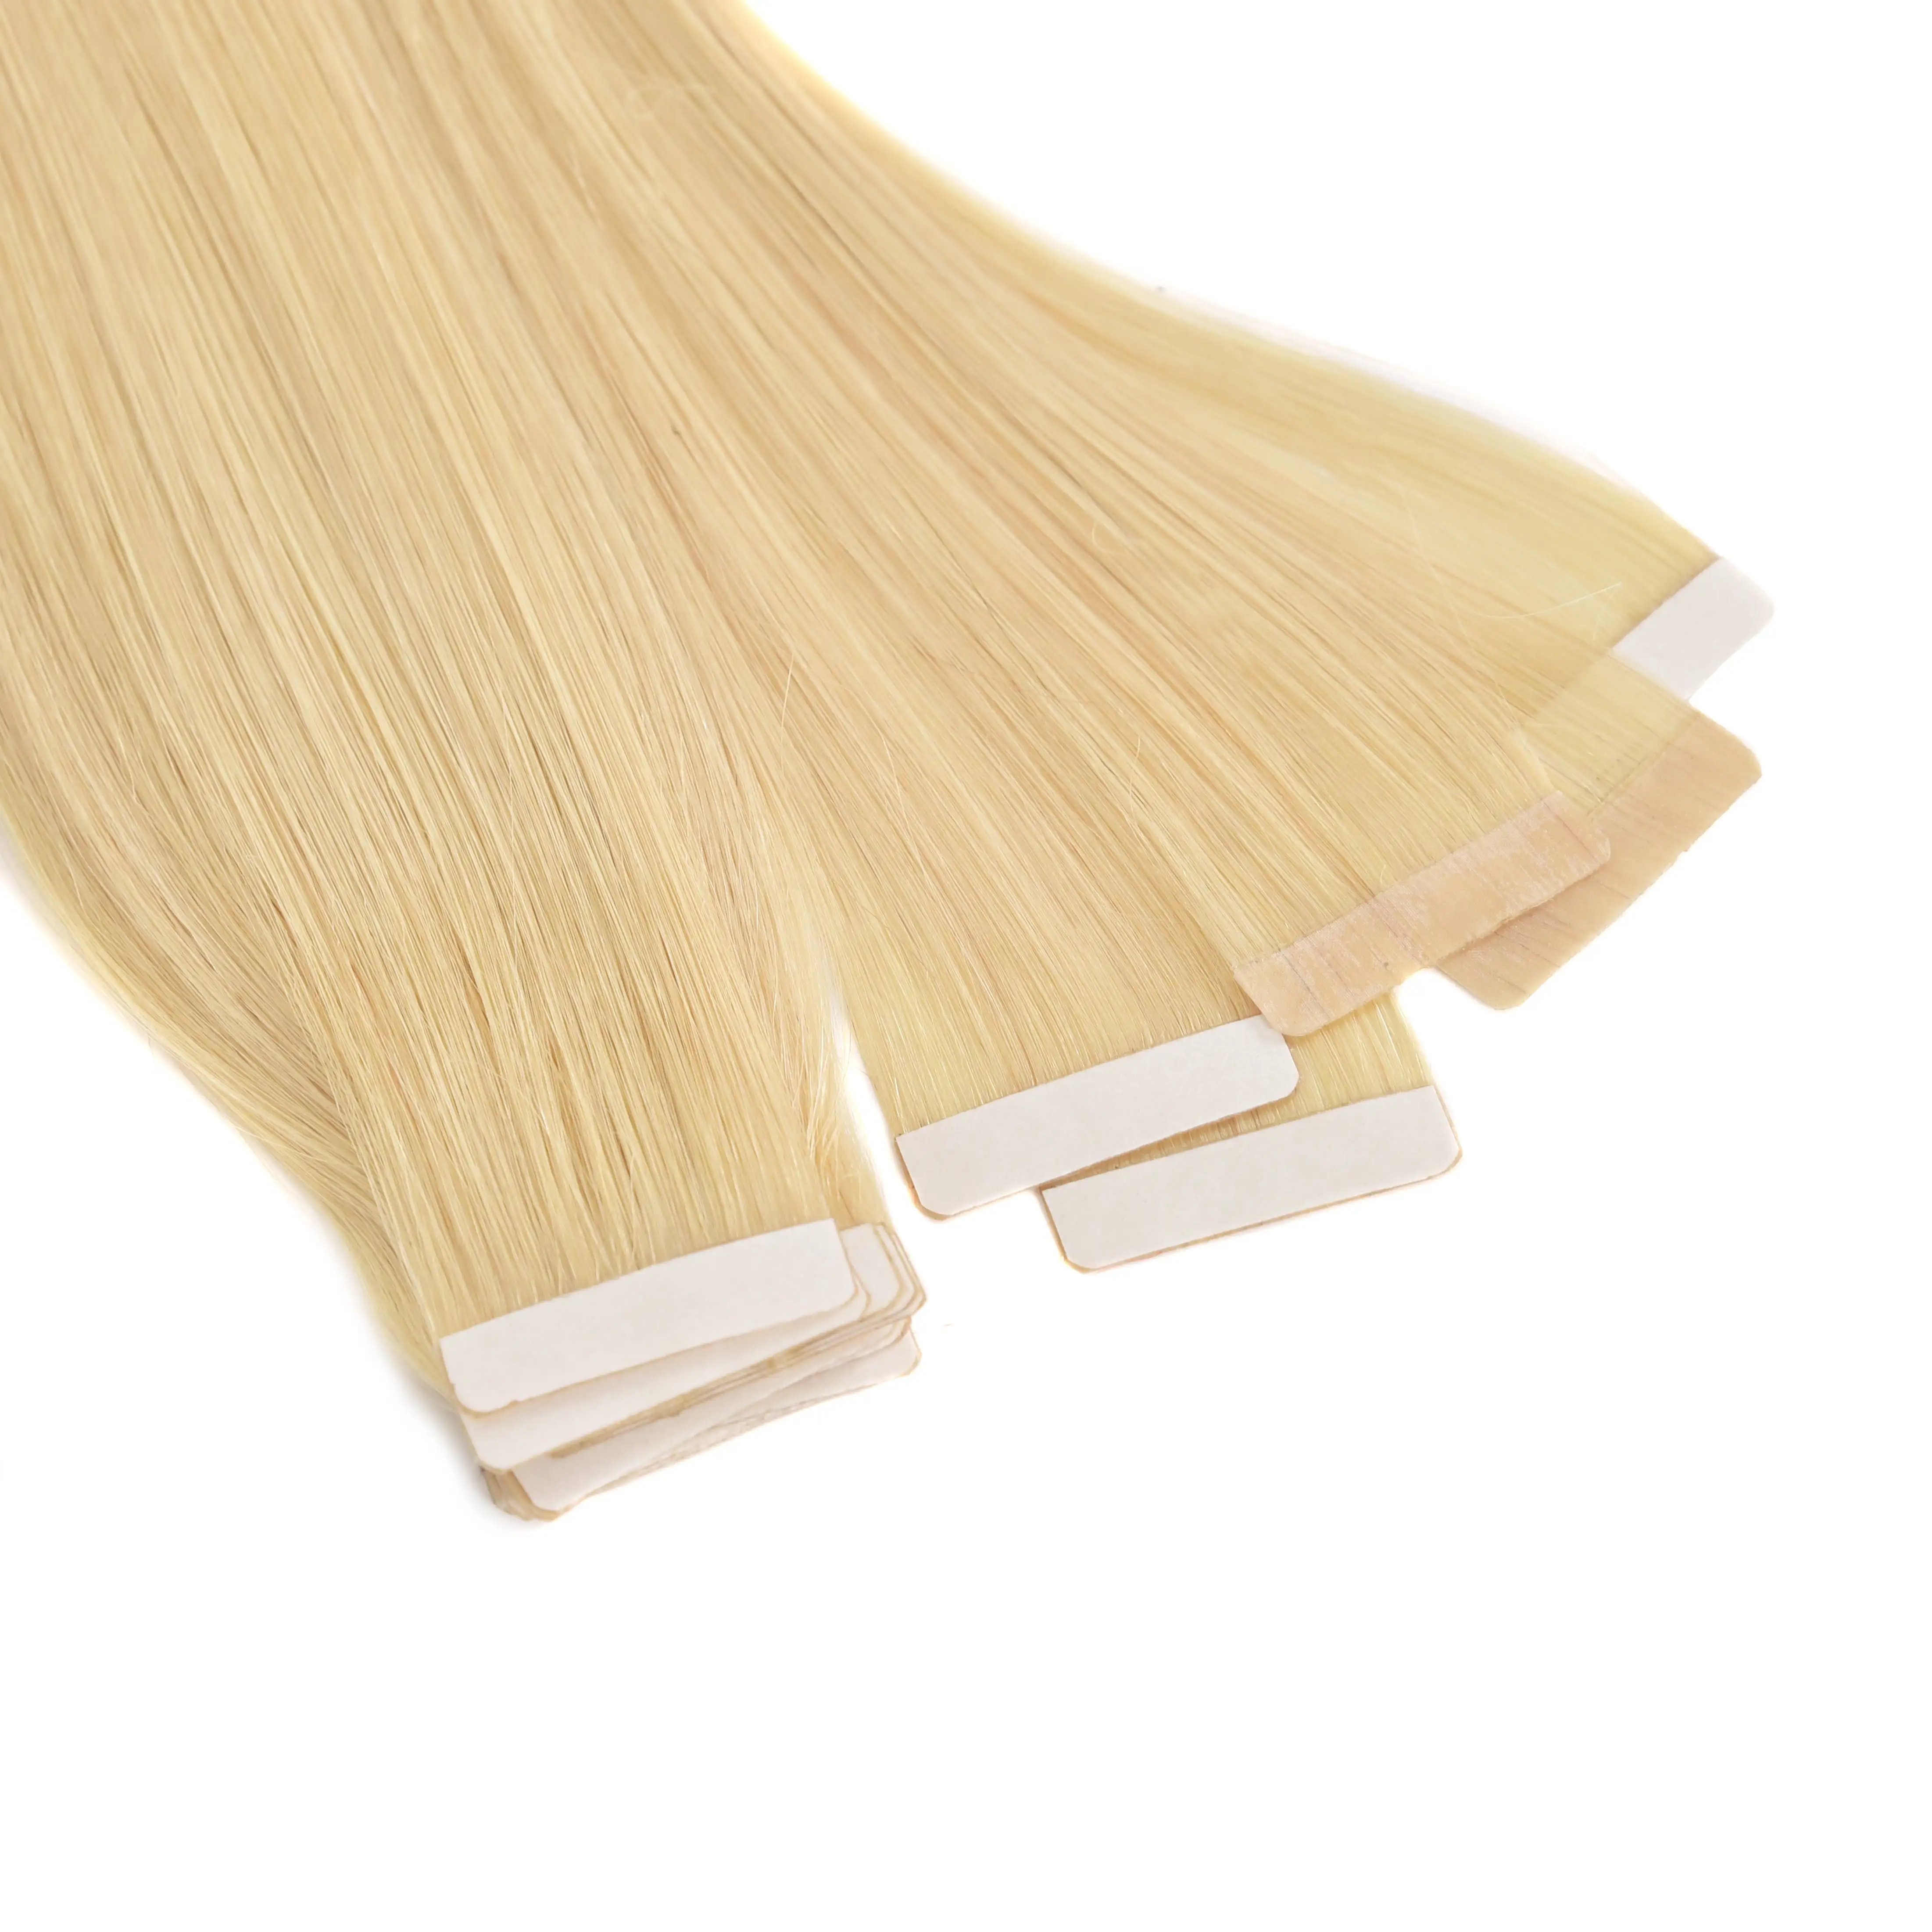 Extensions de cheveux à Double bande, pièces, de couleur blonde, avec bout épais